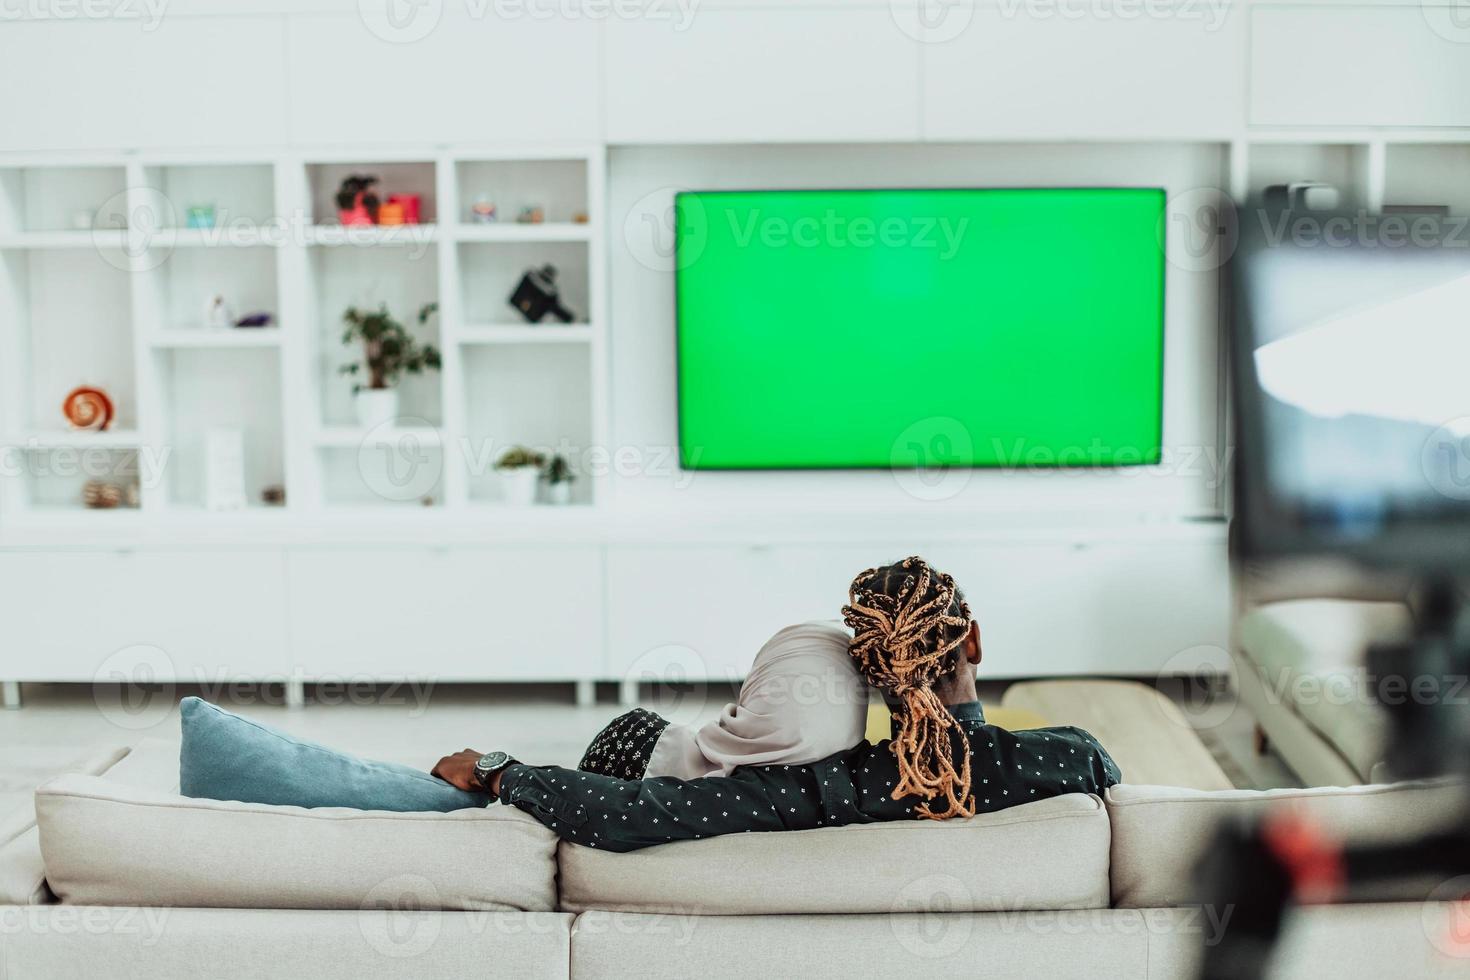 Afrikaanse paar zittend Aan sofa aan het kijken TV samen chroma groen scherm vrouw vervelend Islamitisch hijab kleren foto